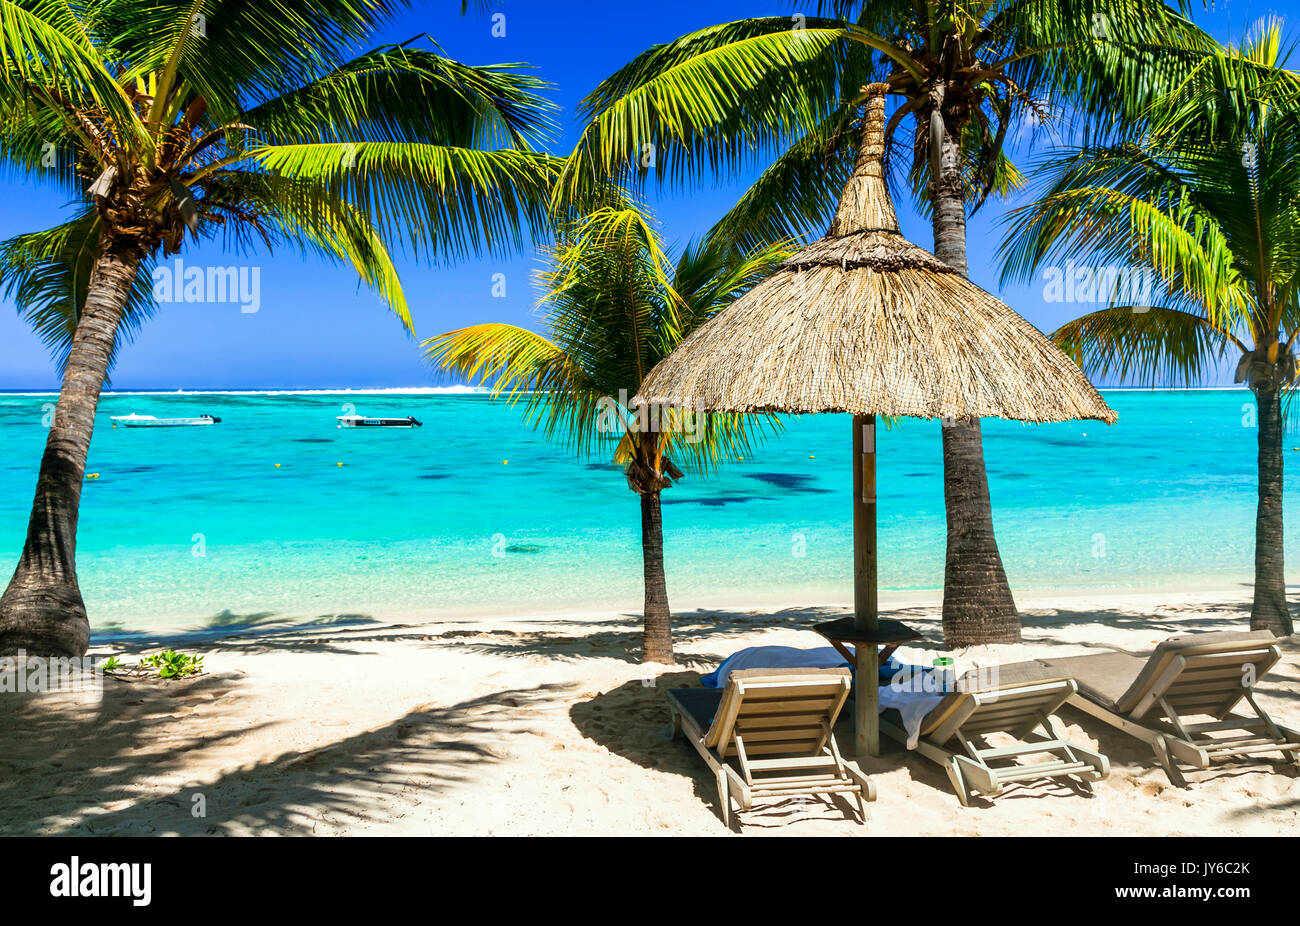 Vacances tropicales - plages de sable blanc et la mer turquoise de l'Ile Maurice Banque D'Images